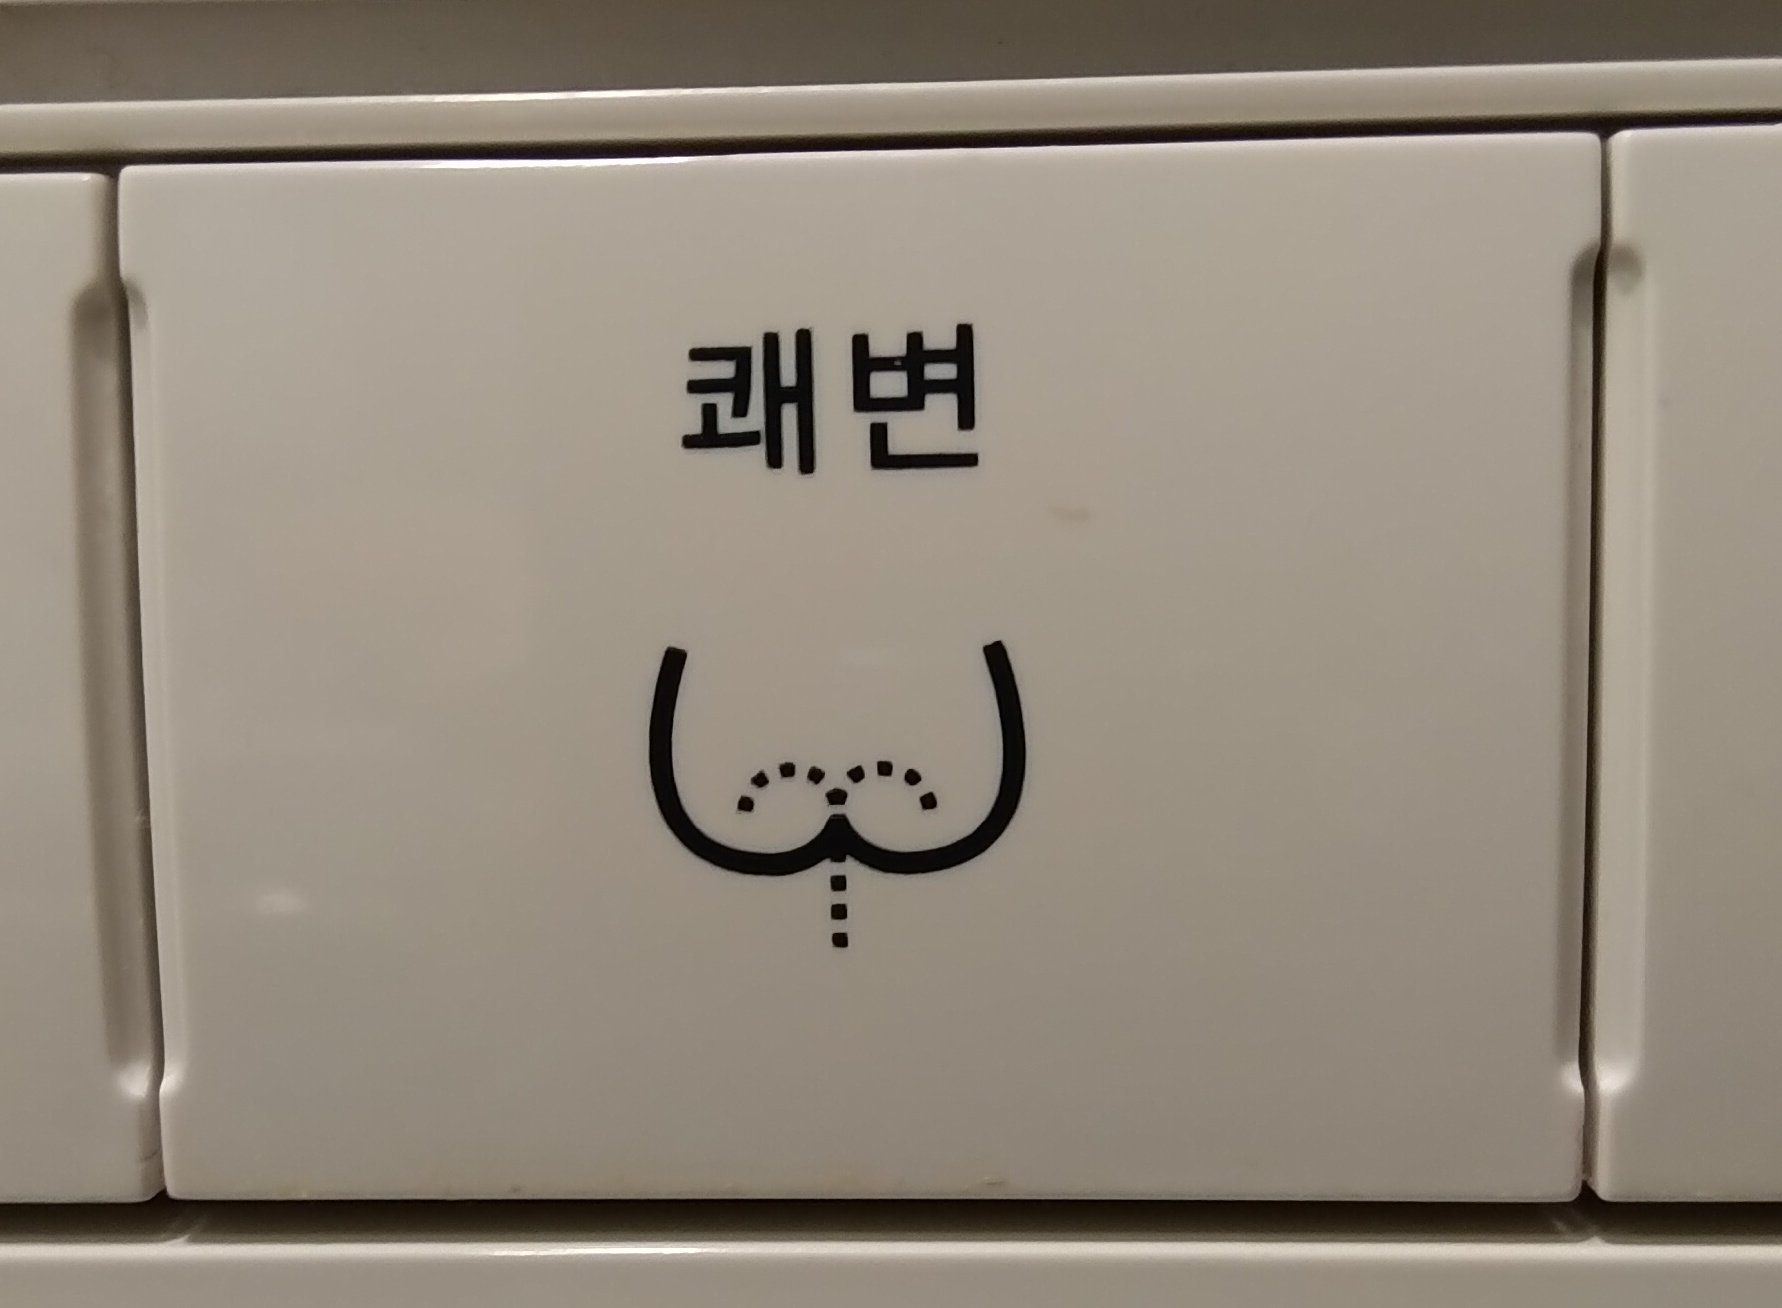 韓国のトイレのウォシュレットボタンにびっくり 笑